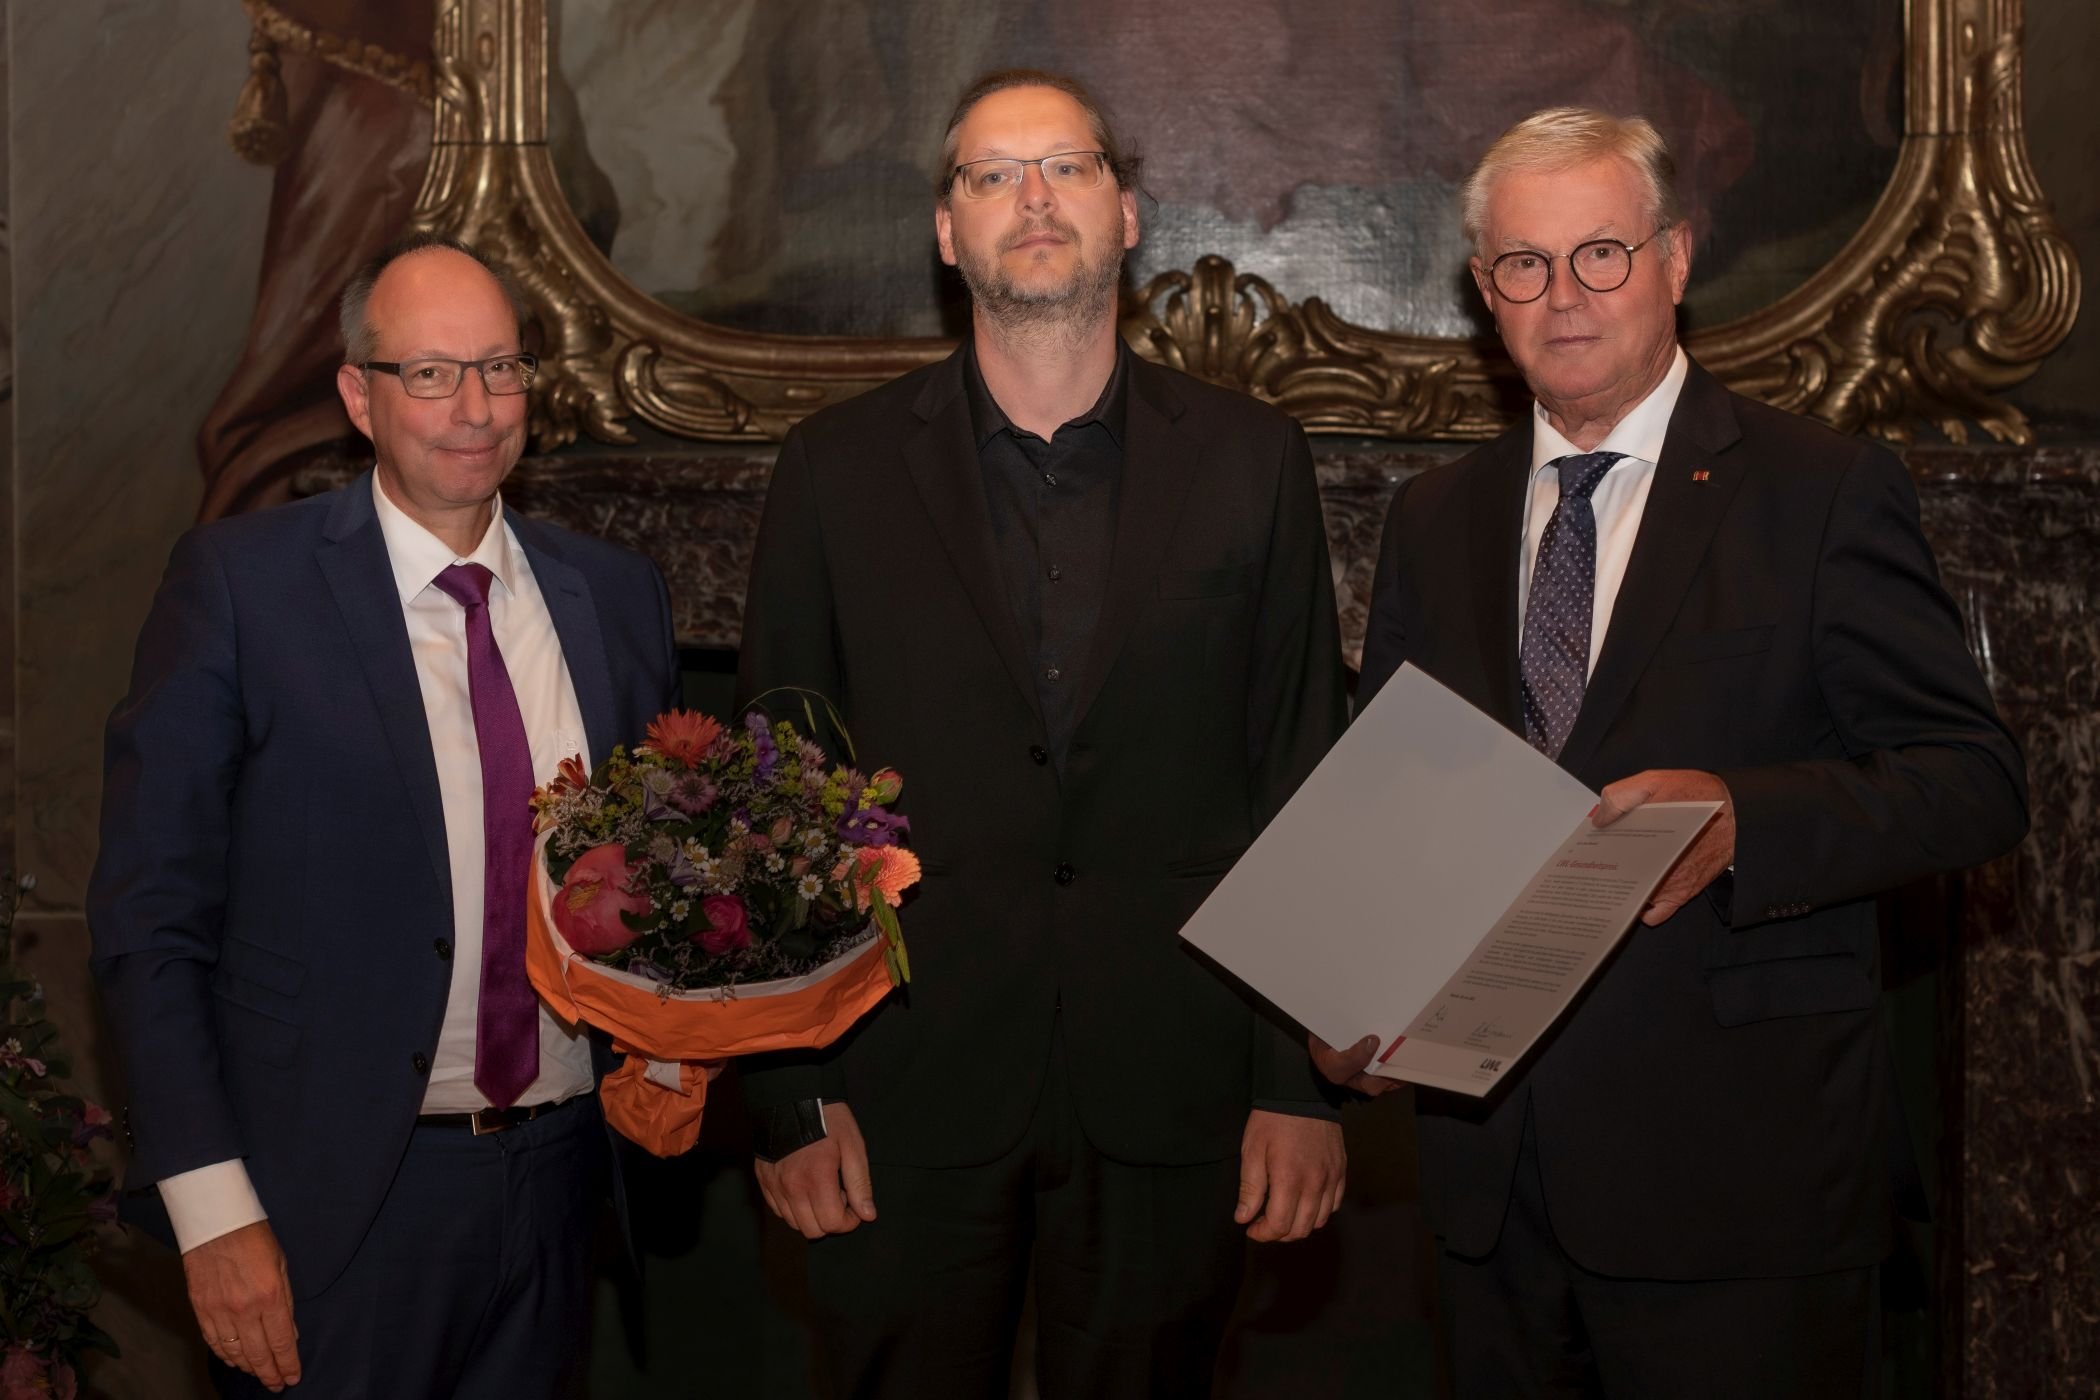 Den LWL-Gesundheitspreis übergeben LWL-Direktor Matthias Löb (l.), und Klaus Baumann, Vorsitzender der LWL-Landschaftsversammlung, (r.) an Sven Borchert aus Dortmund / LWL